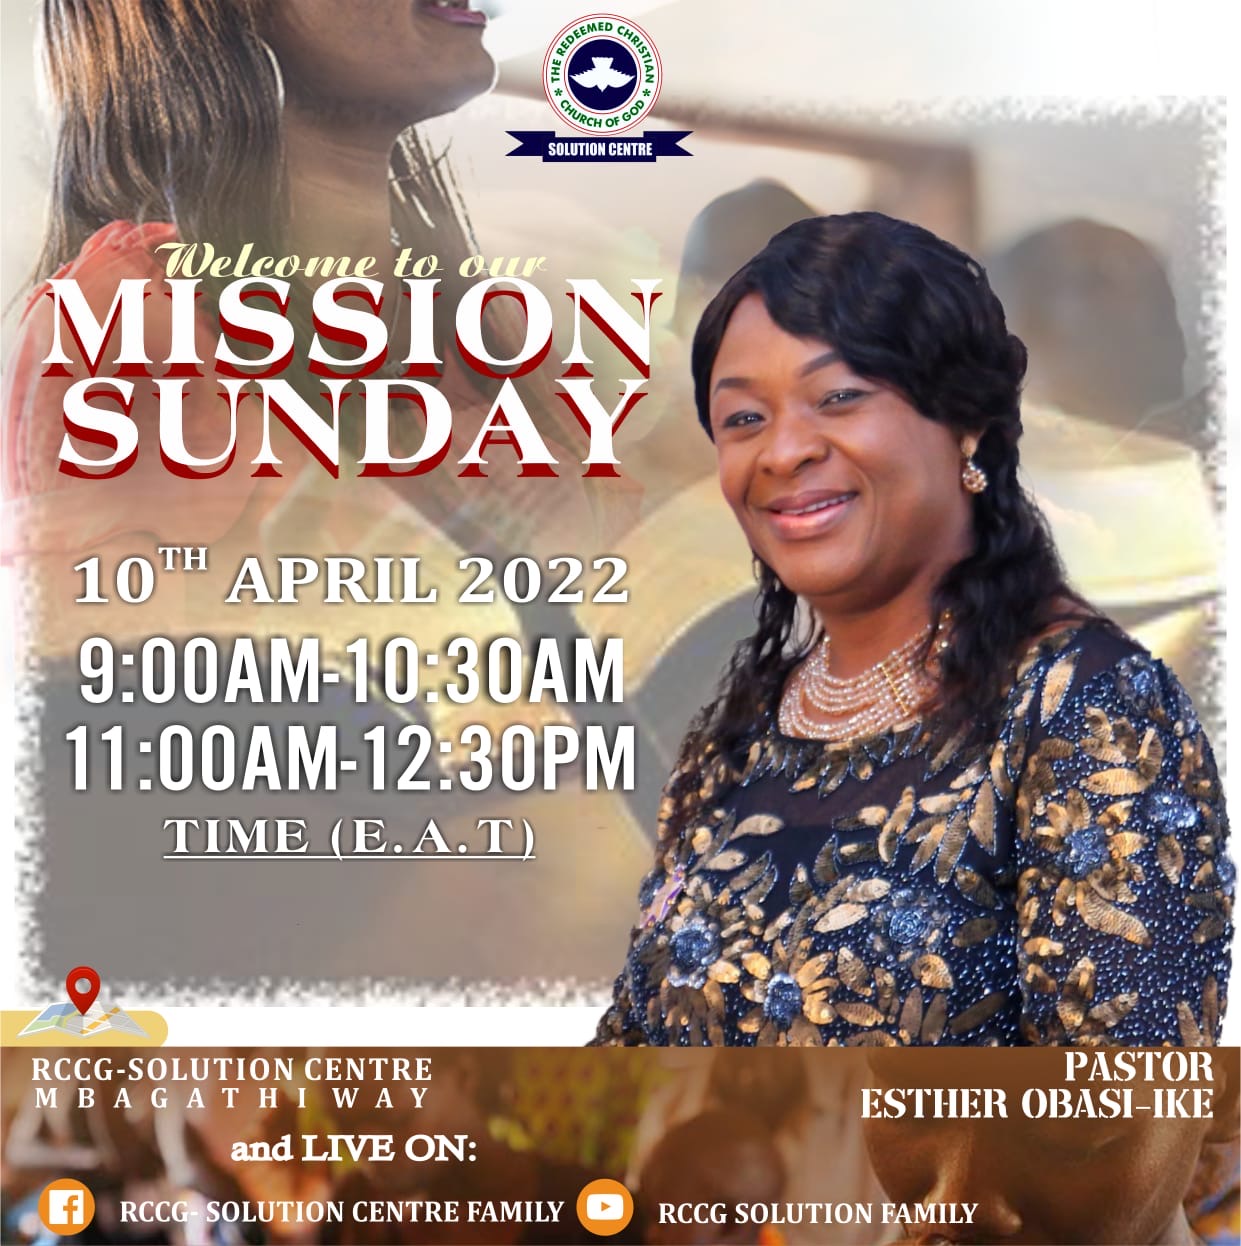 Mission Sunday Service